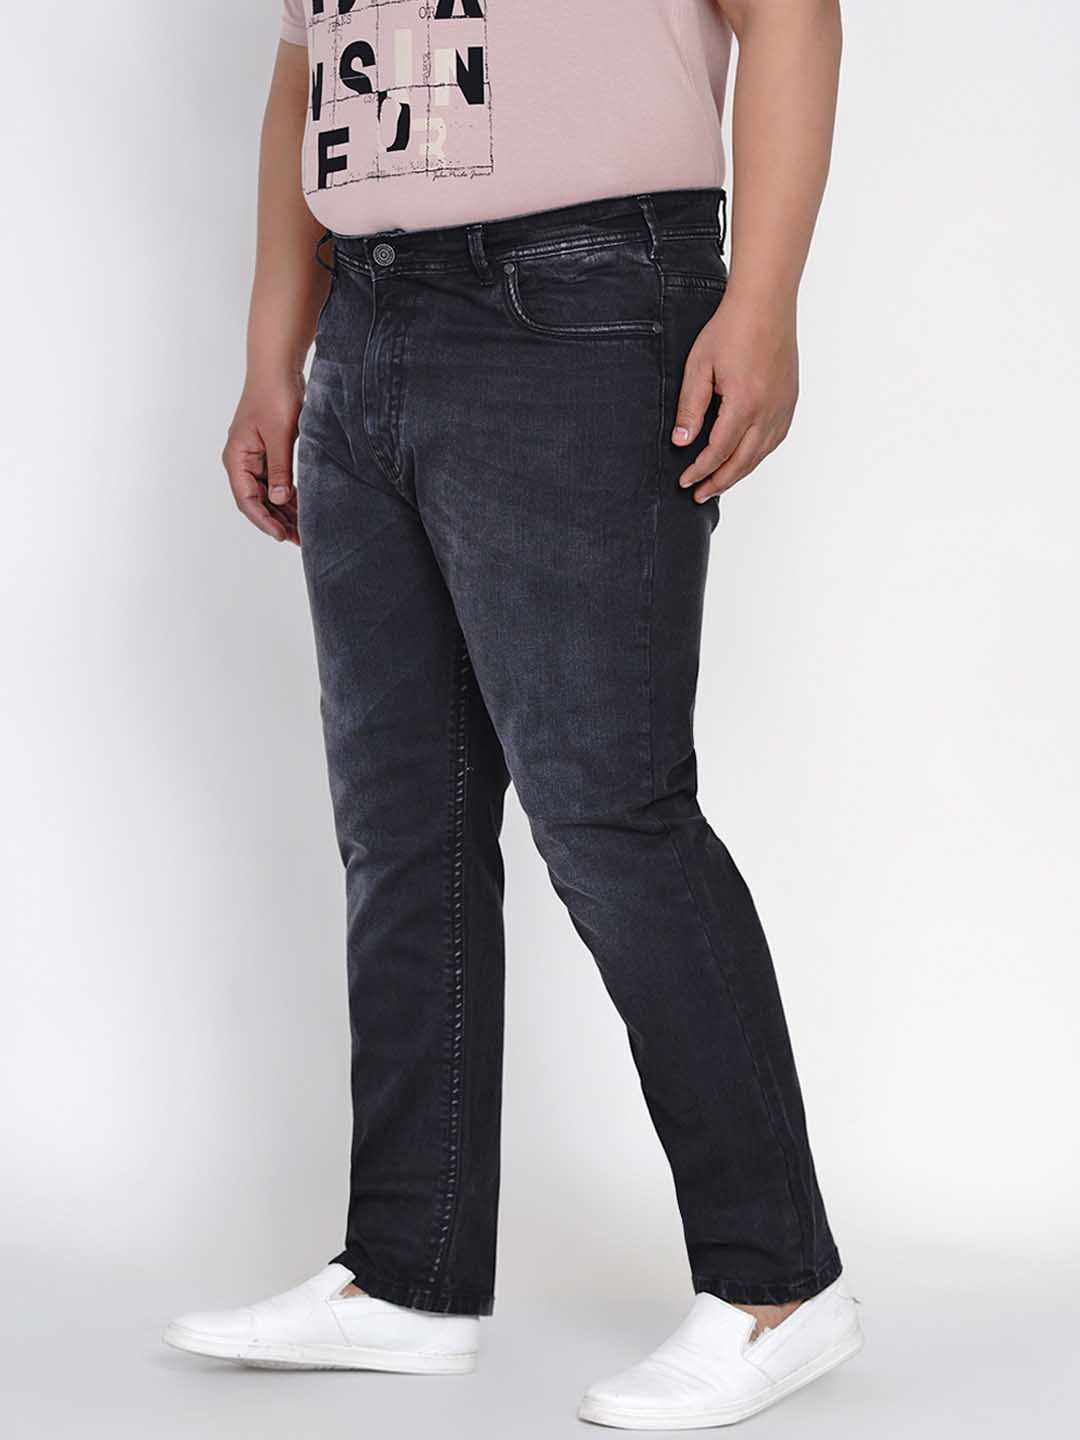 bottomwear/jeans/JPJ12119/jpj12119-3.jpg